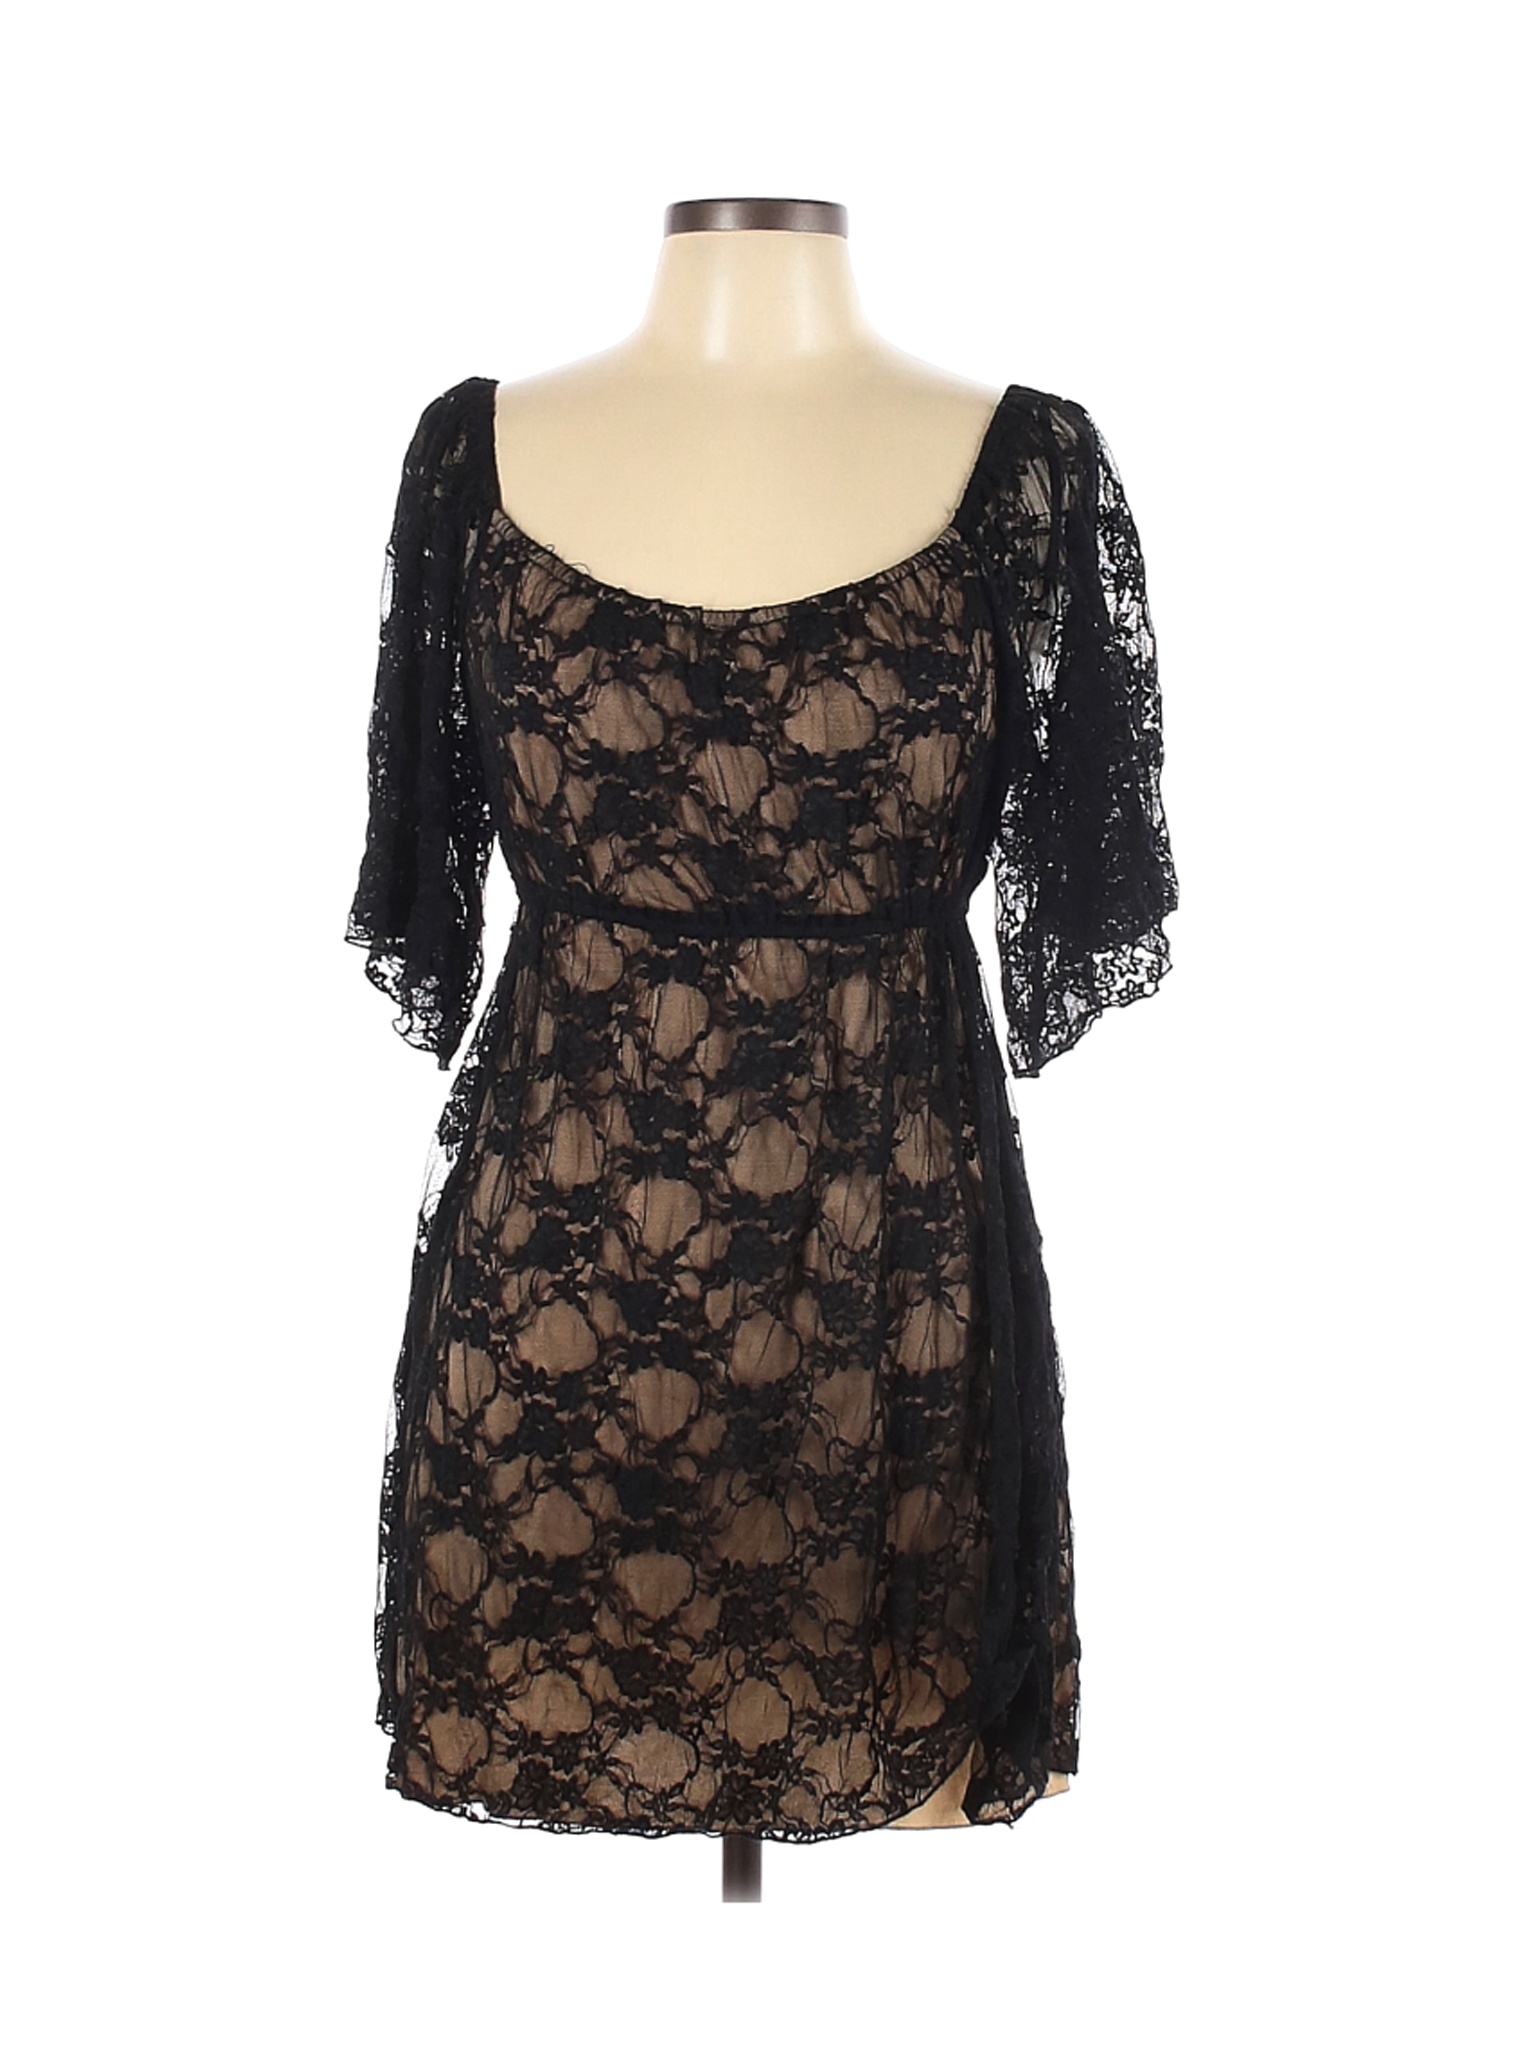 B. Smart Women Black Casual Dress 11 | eBay